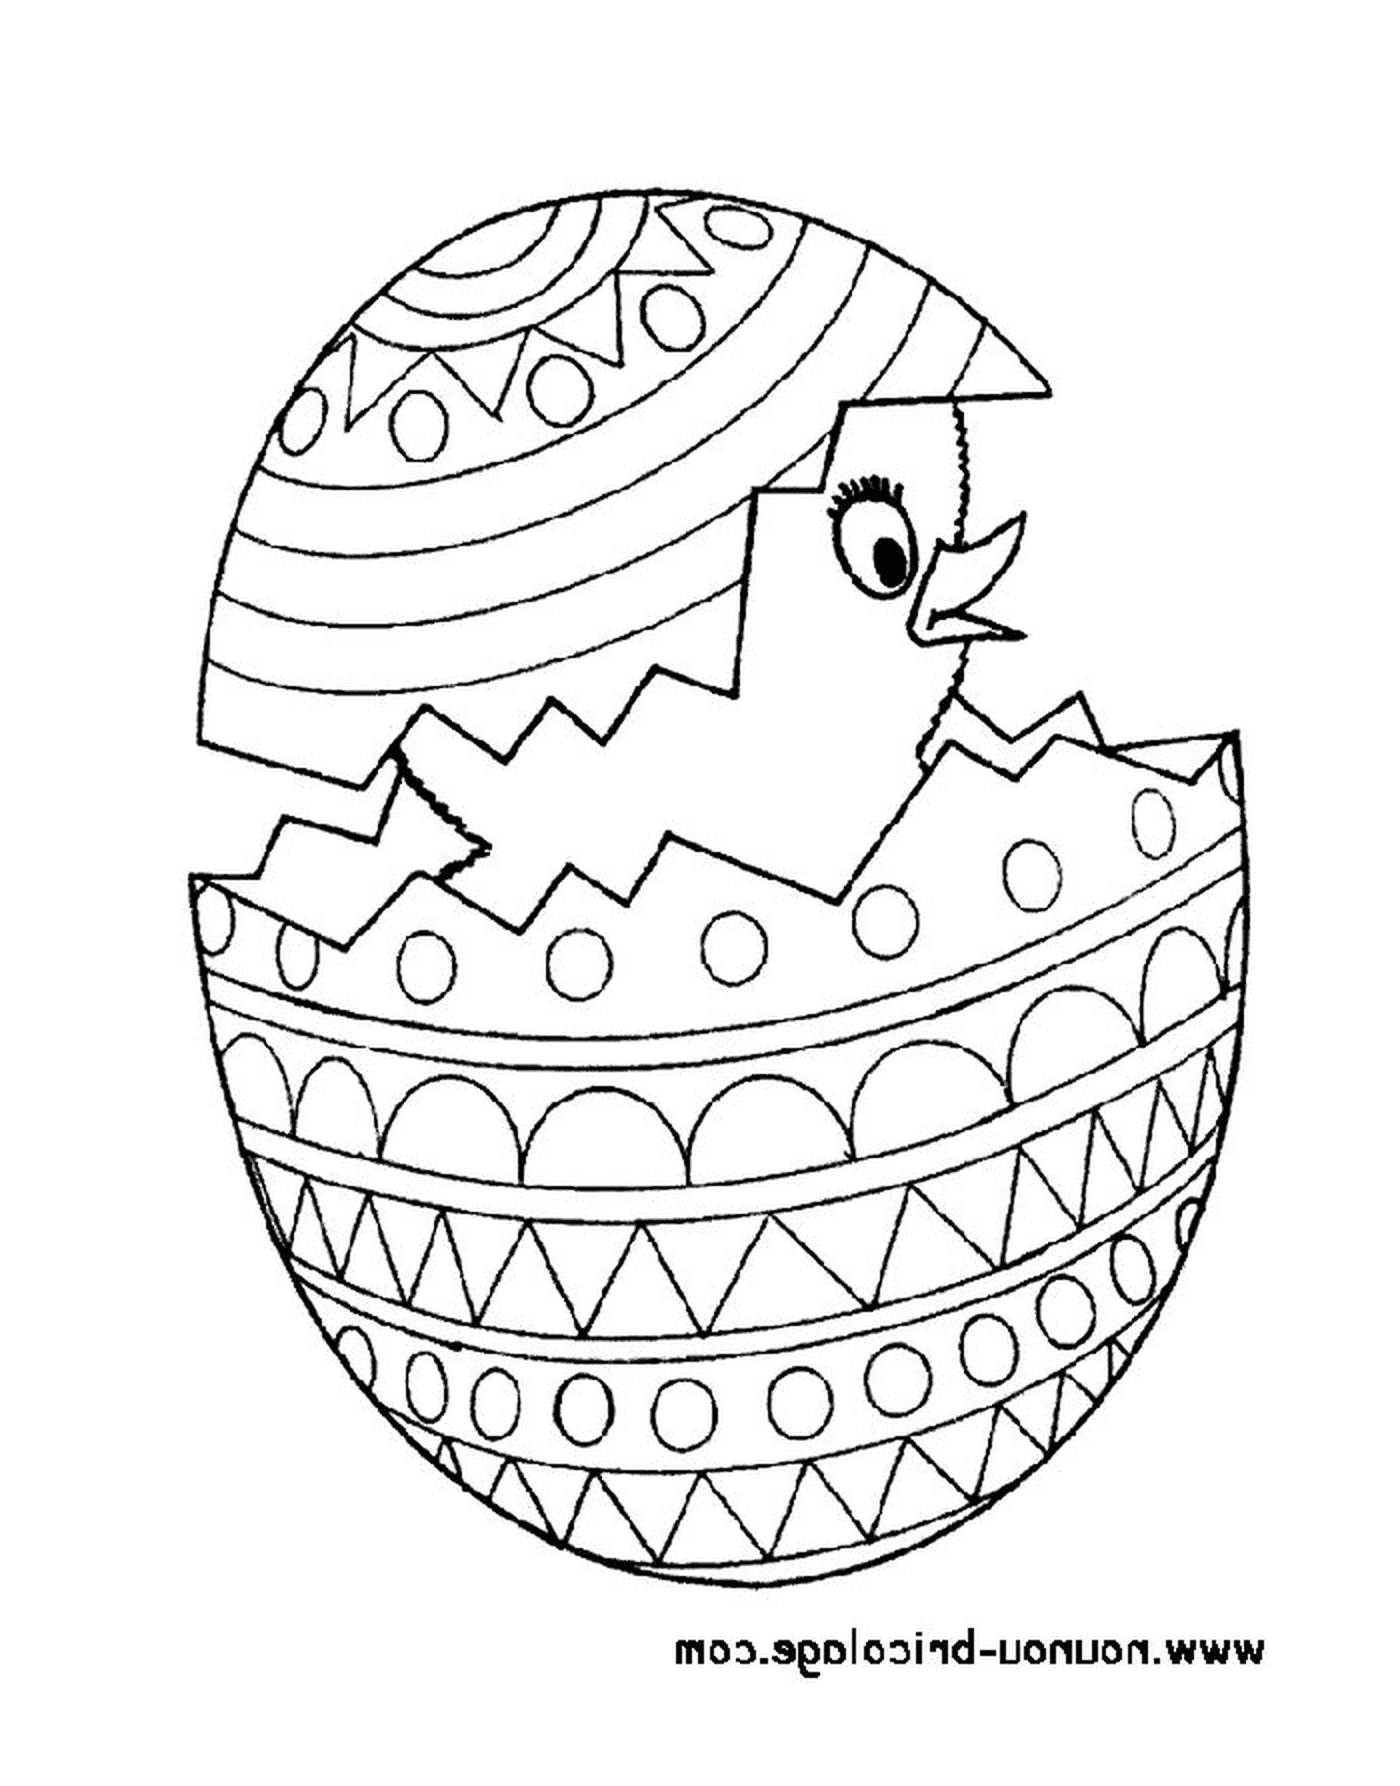   Pâques 48, un œuf de Pâques avec un poussin à l'intérieur 